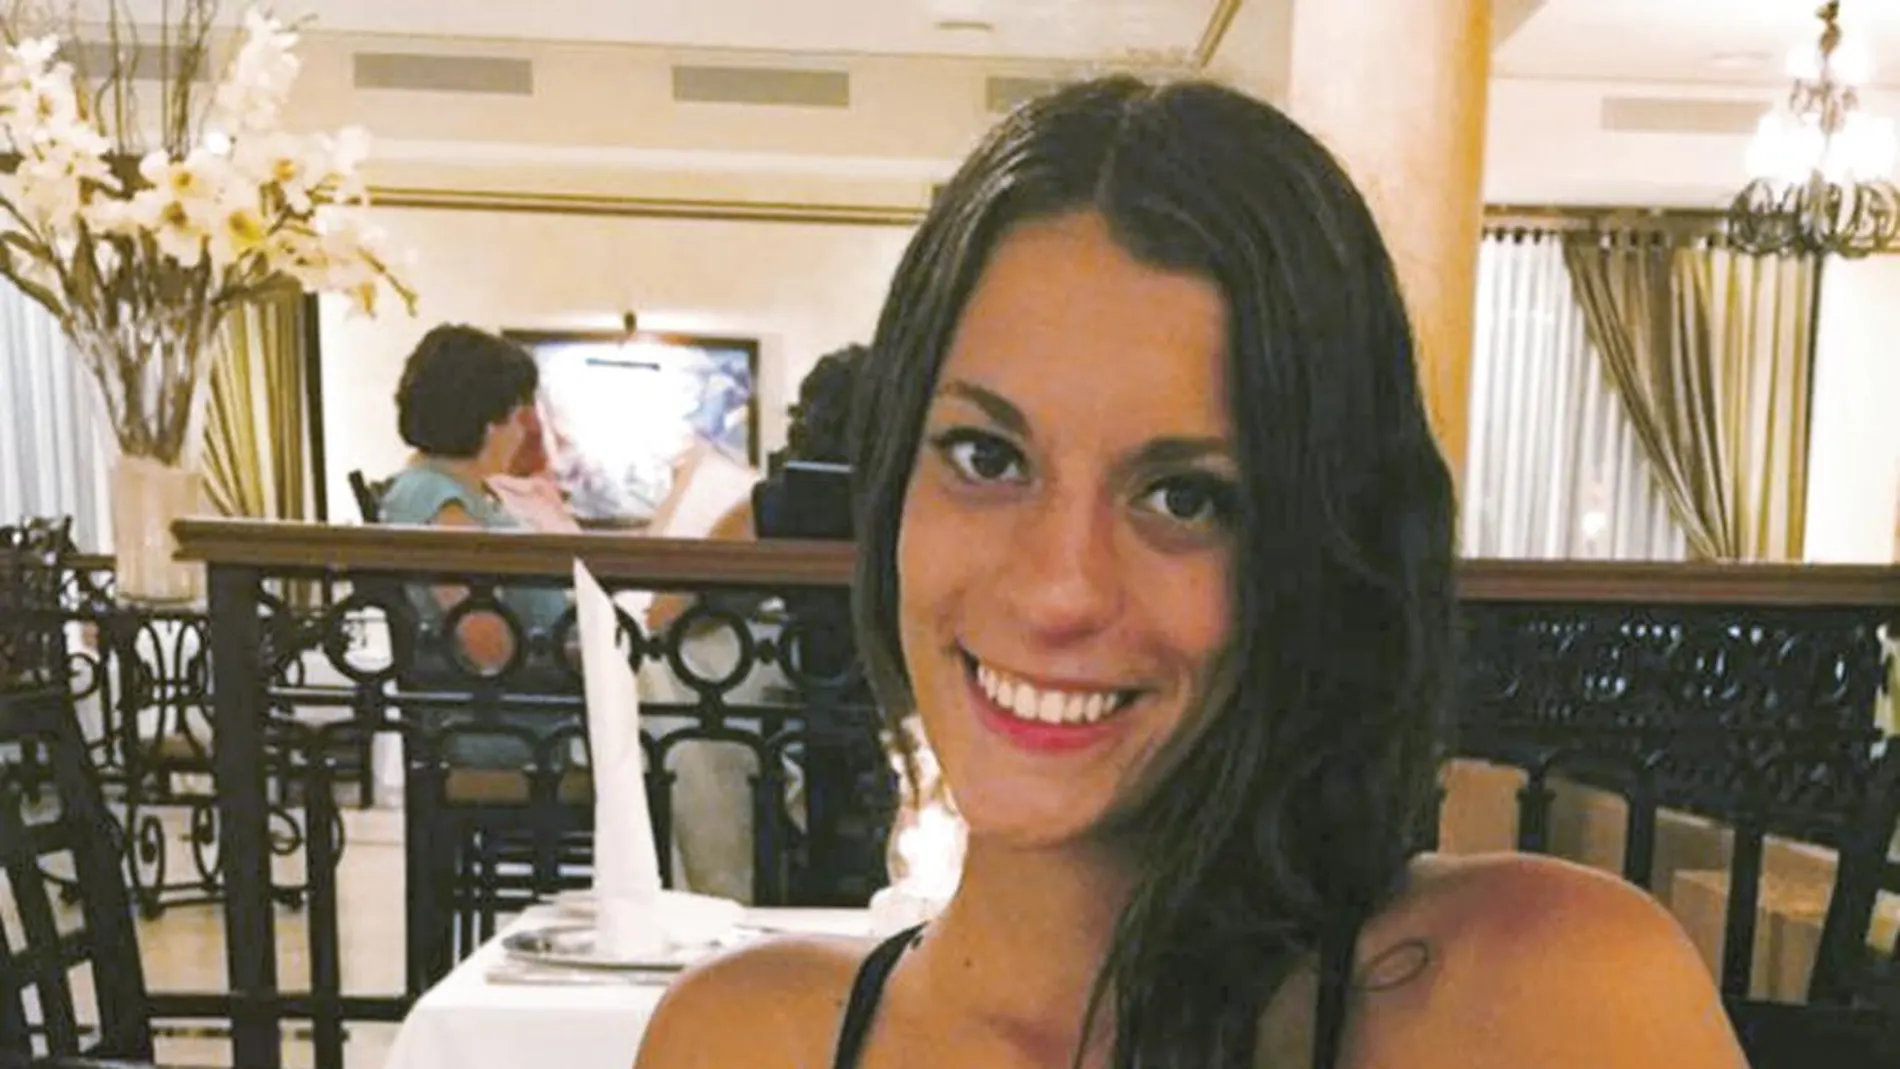 Diana Quer desapareció hace ahora once meses en A Pobra do Caramiñal. Un juez acordó  el archivo provisional de la causa al no haber  avances en la investigación que permitan la detención de un sospechoso.